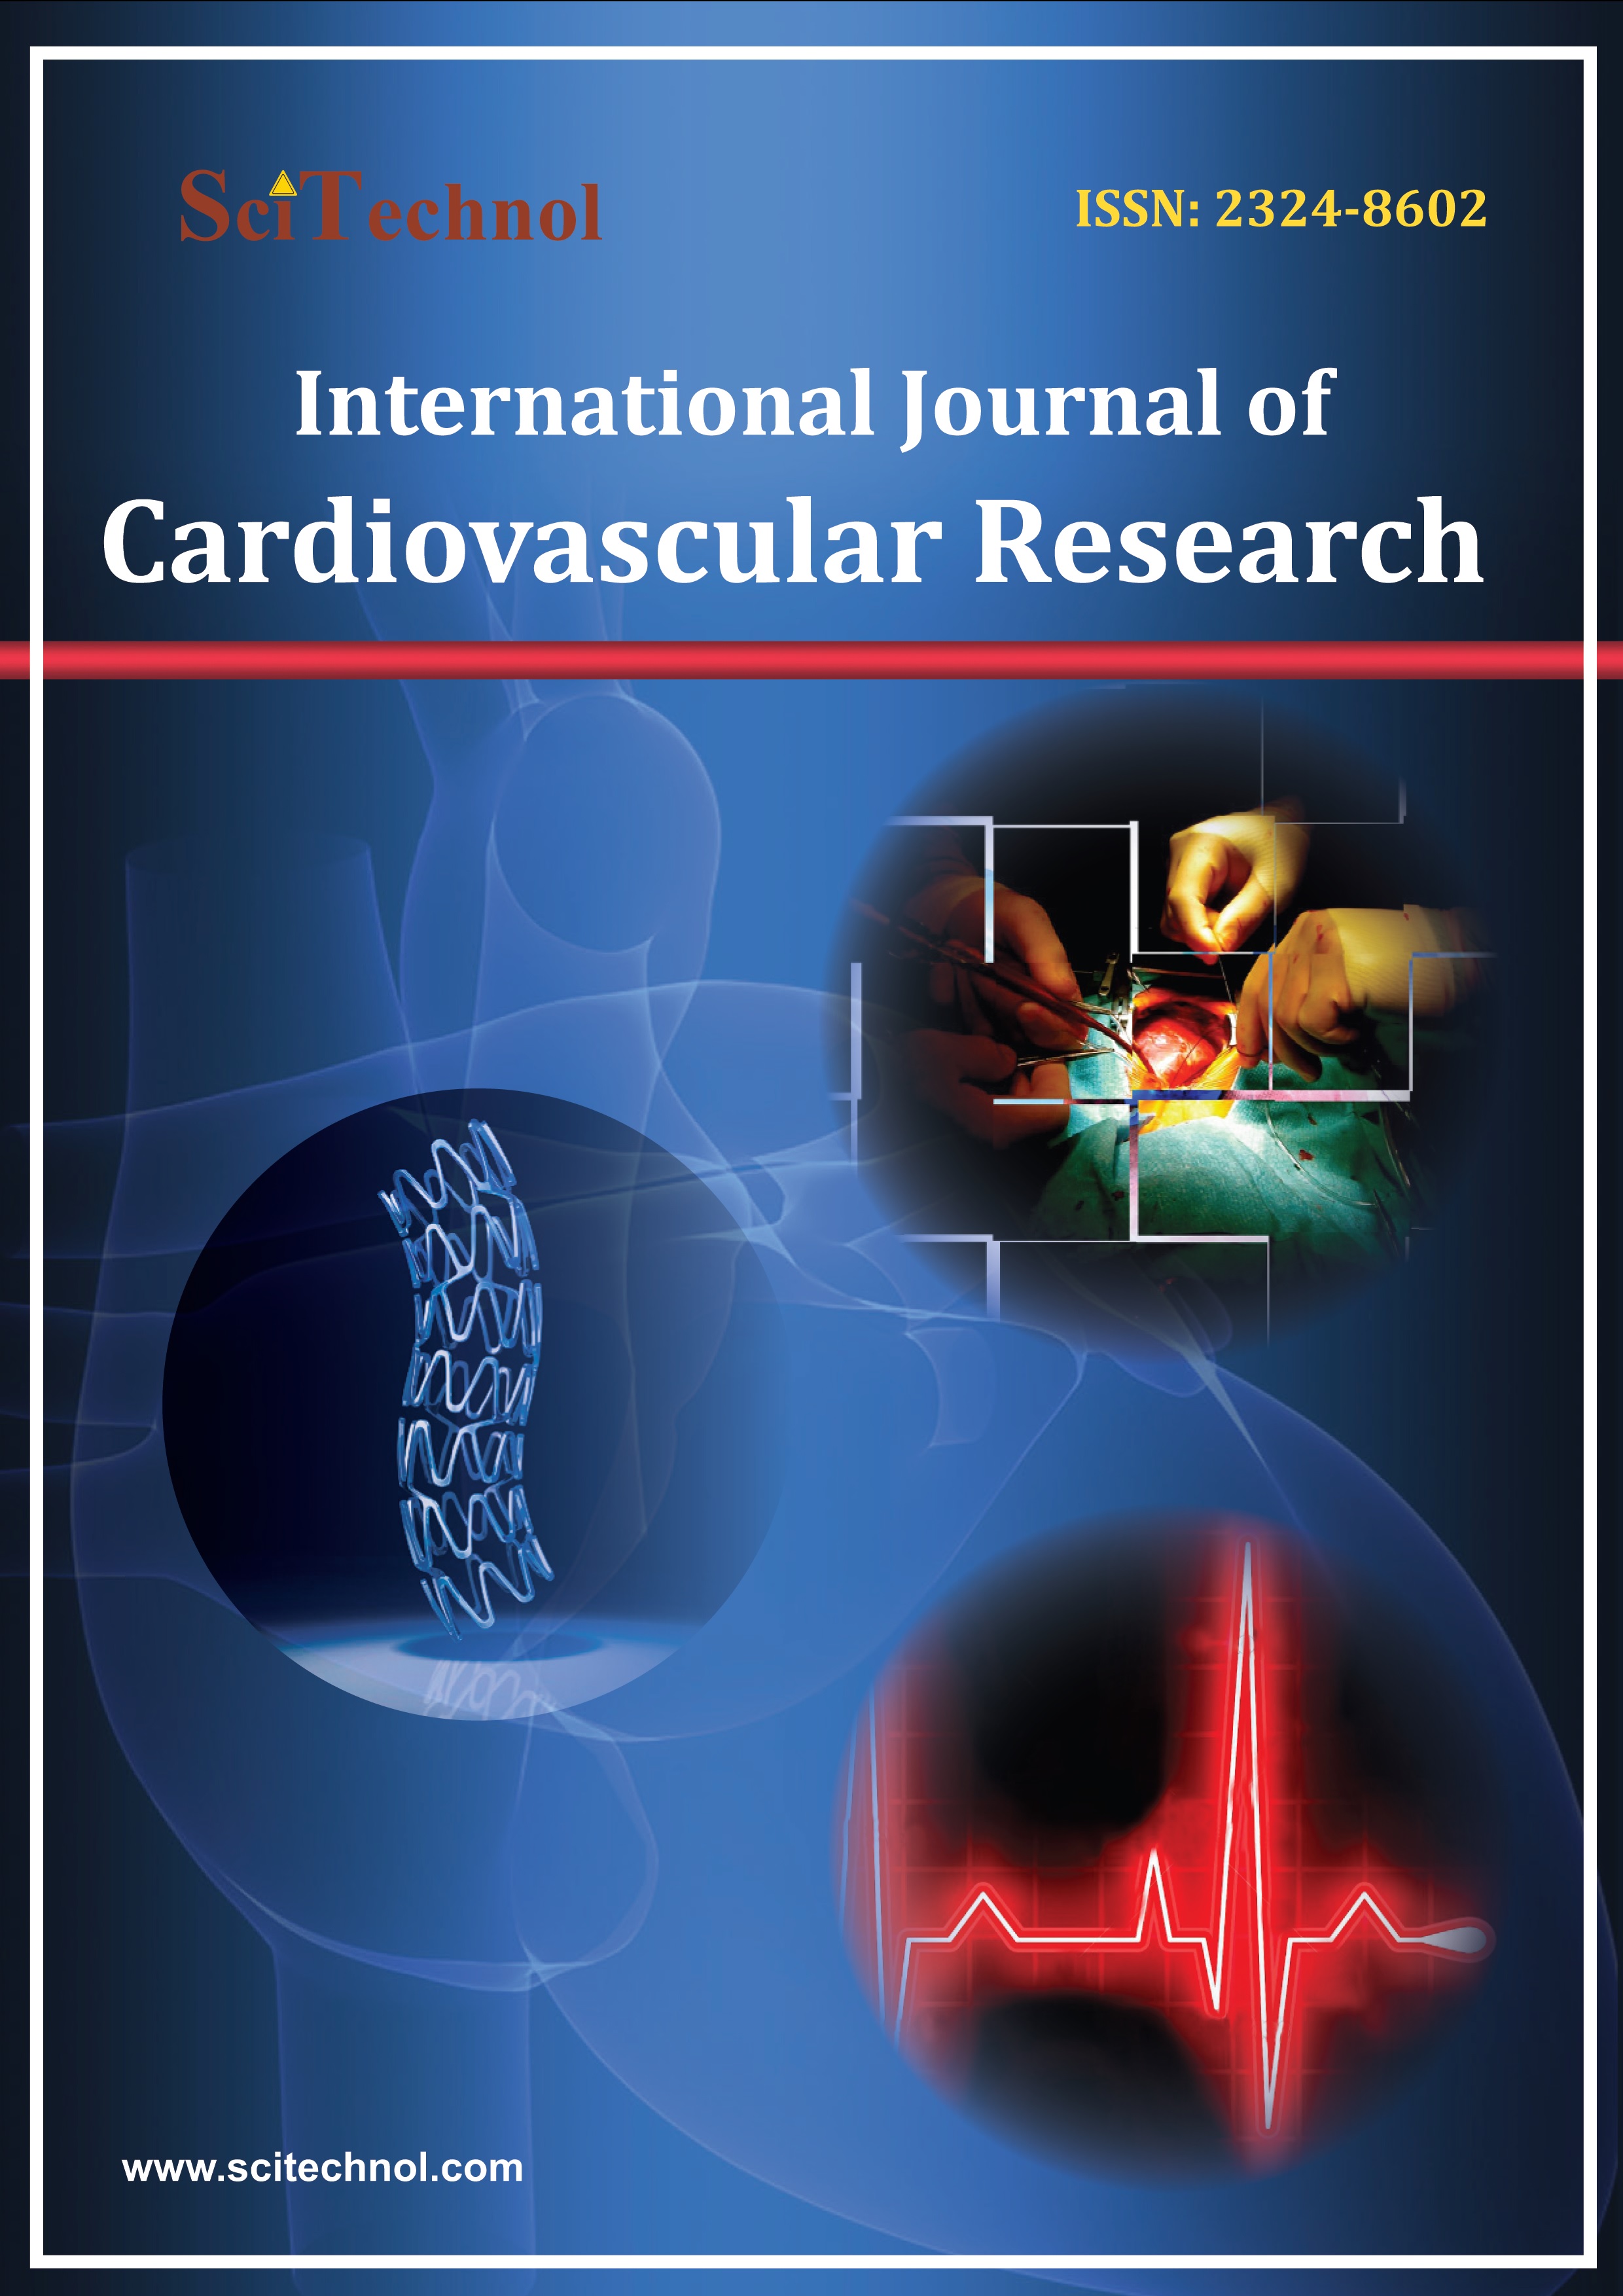 International-Journal-of-Cardiovascular-Research-flyer.jpg